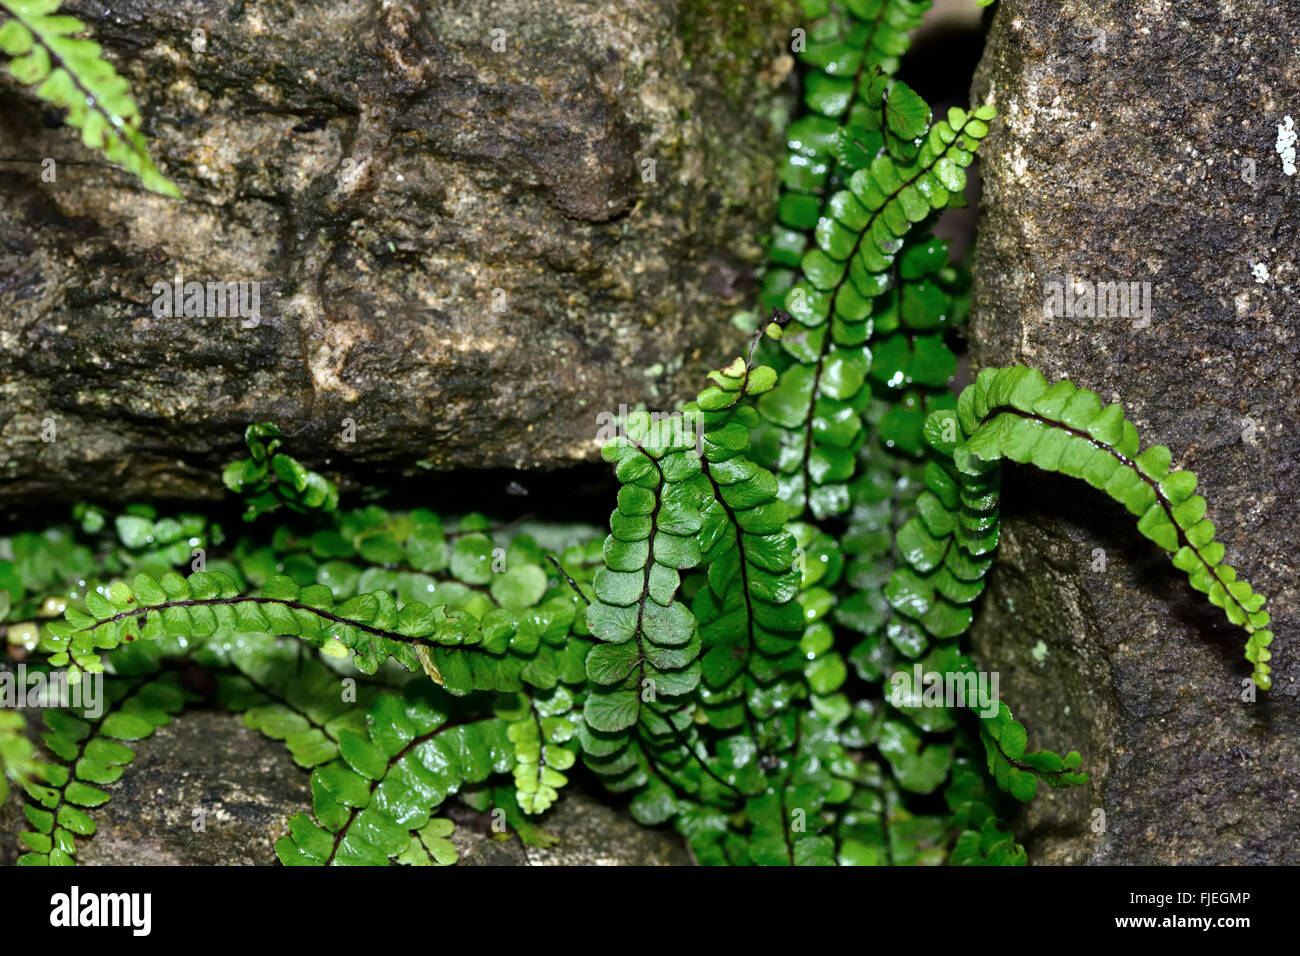 Maidenhair spleenwort (Asplenium trichomanes ssp. quadrivalens). Small fern in the family Aspleniaceae, growing amongst rocks Stock Photo